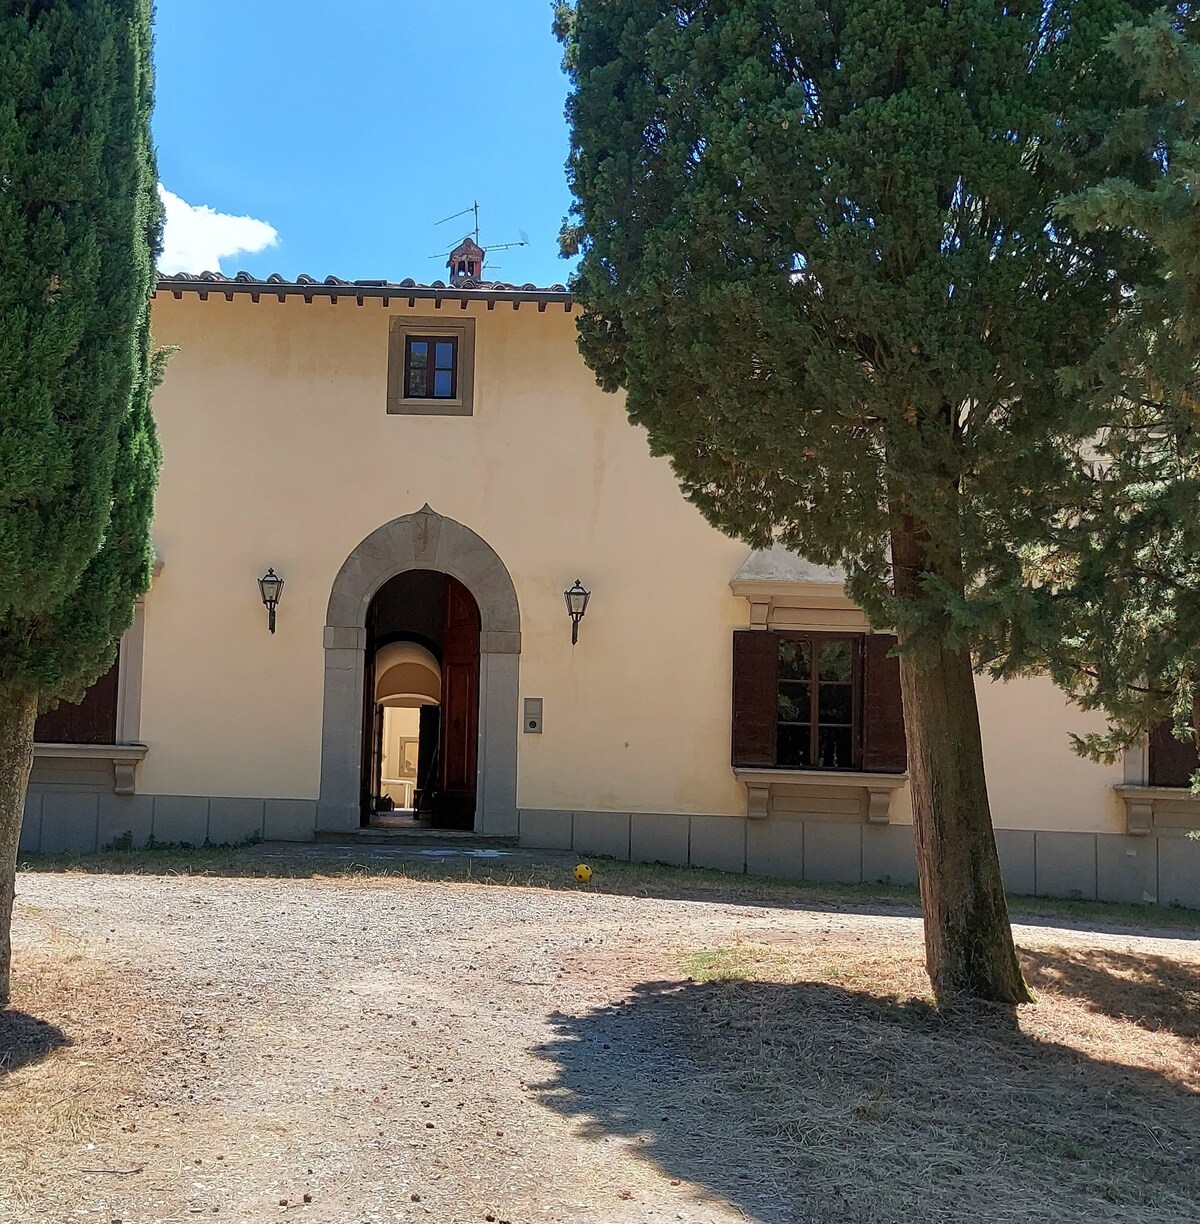 Villa Ca' di Monte, casa d'epoca ferma nel tempo